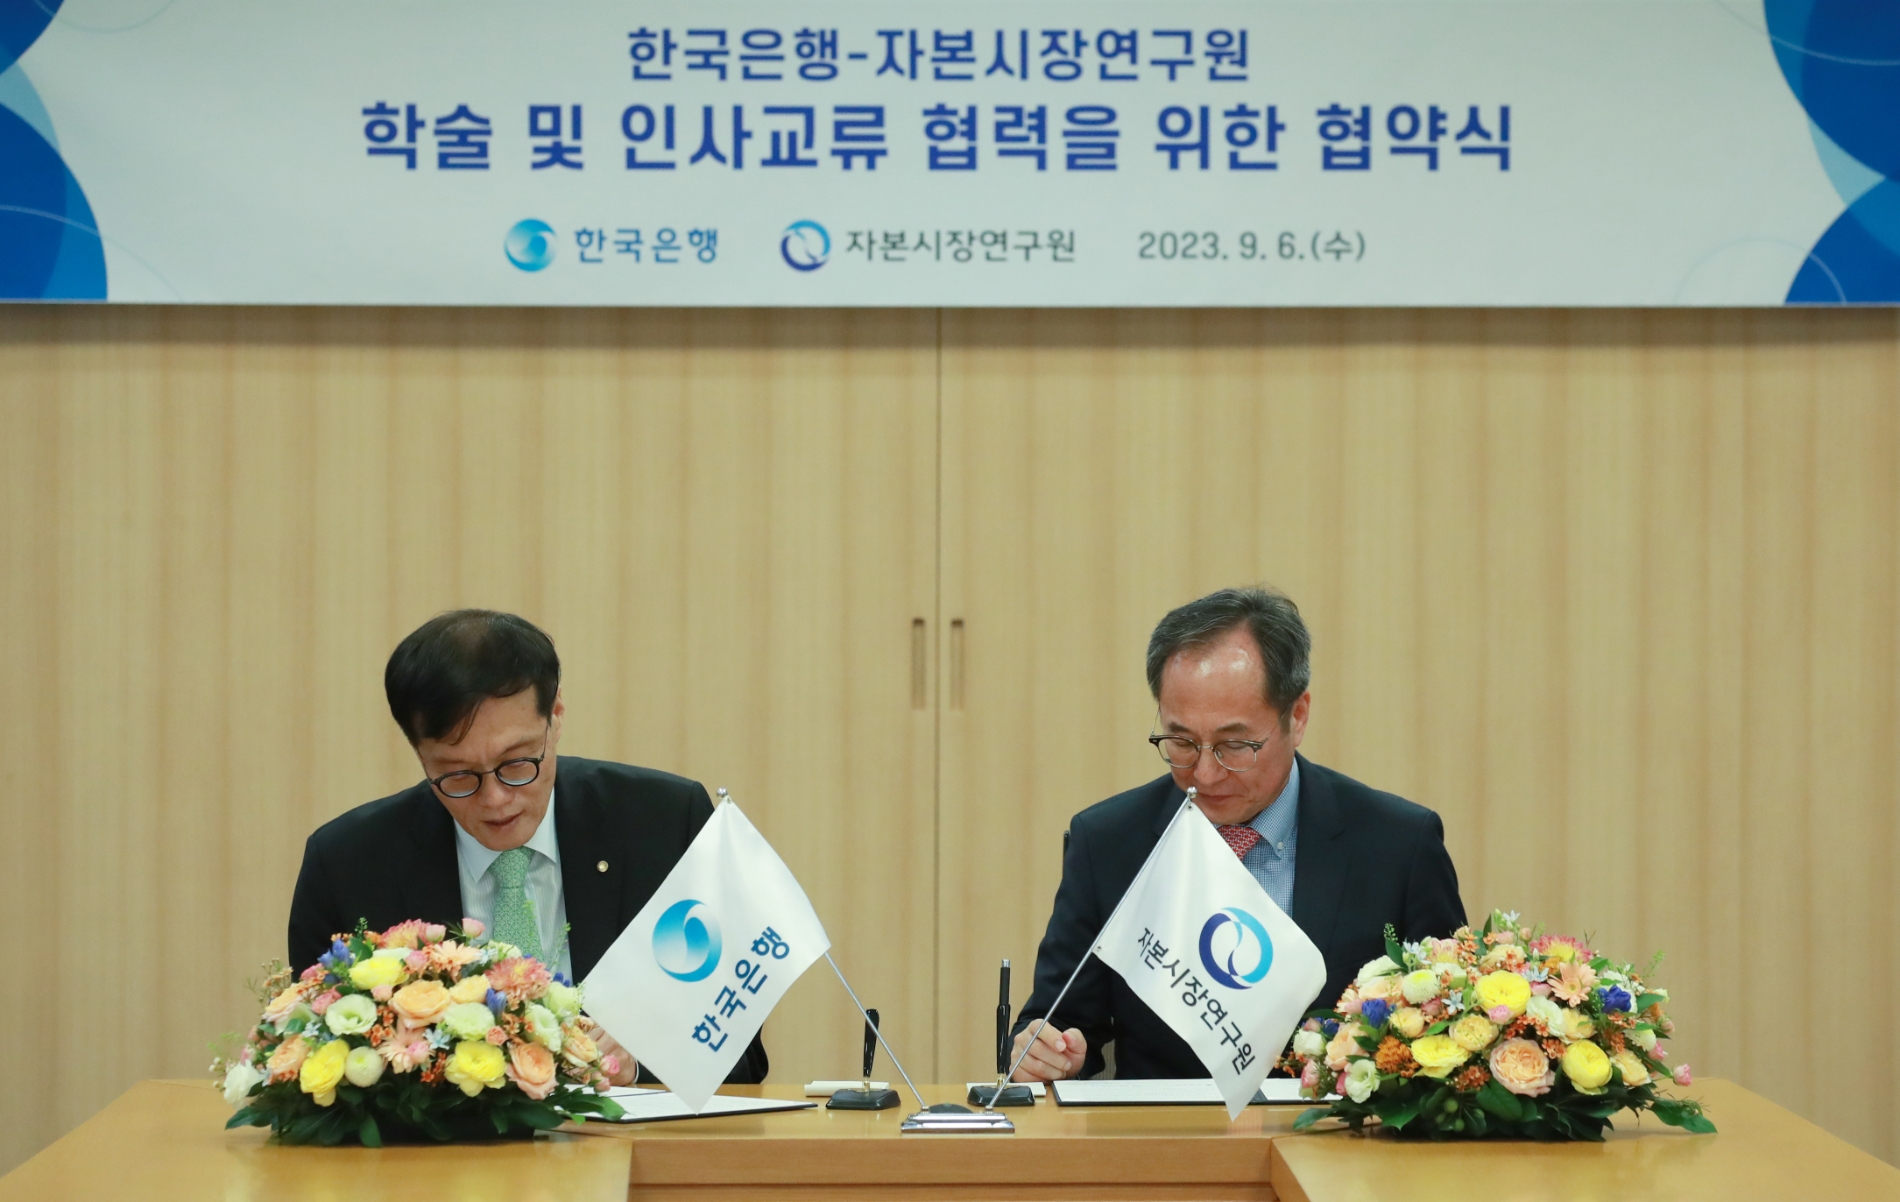 한국은행과 자본시장연구원은 6일 자본연에서 학술 및 인사교류 협력을 위한 업무협약(MOU)을 체결했다. (왼쪽부터) 이창용 한국은행 총재, 신진영 자본시장연구원장. / 사진제공= 한국은행(2023.09.06)